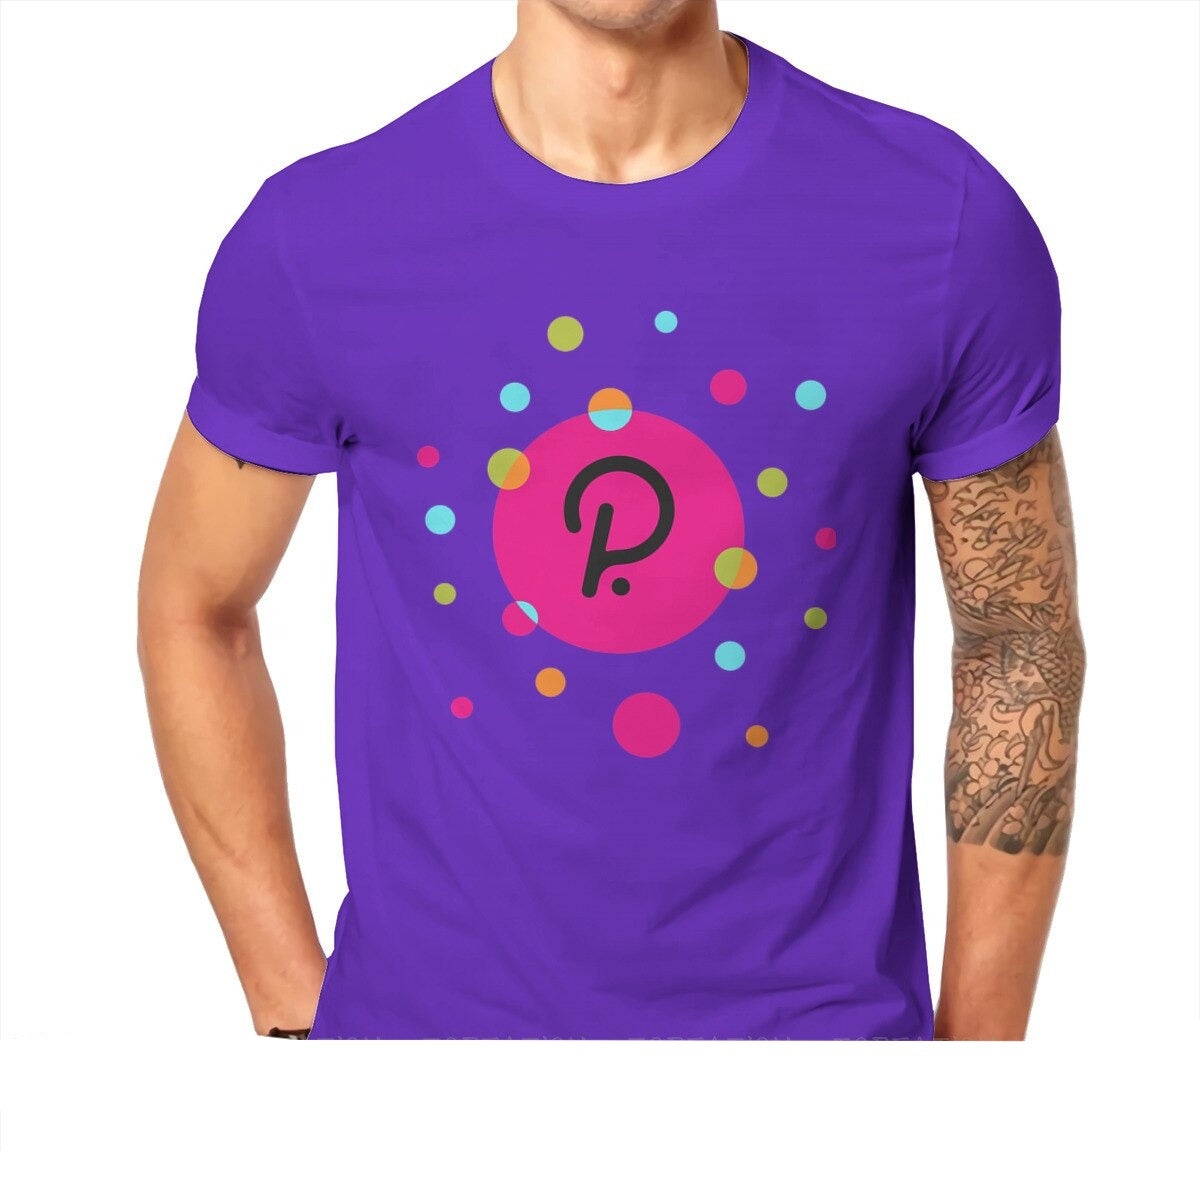 Polkadot  t-shirts  11 colors